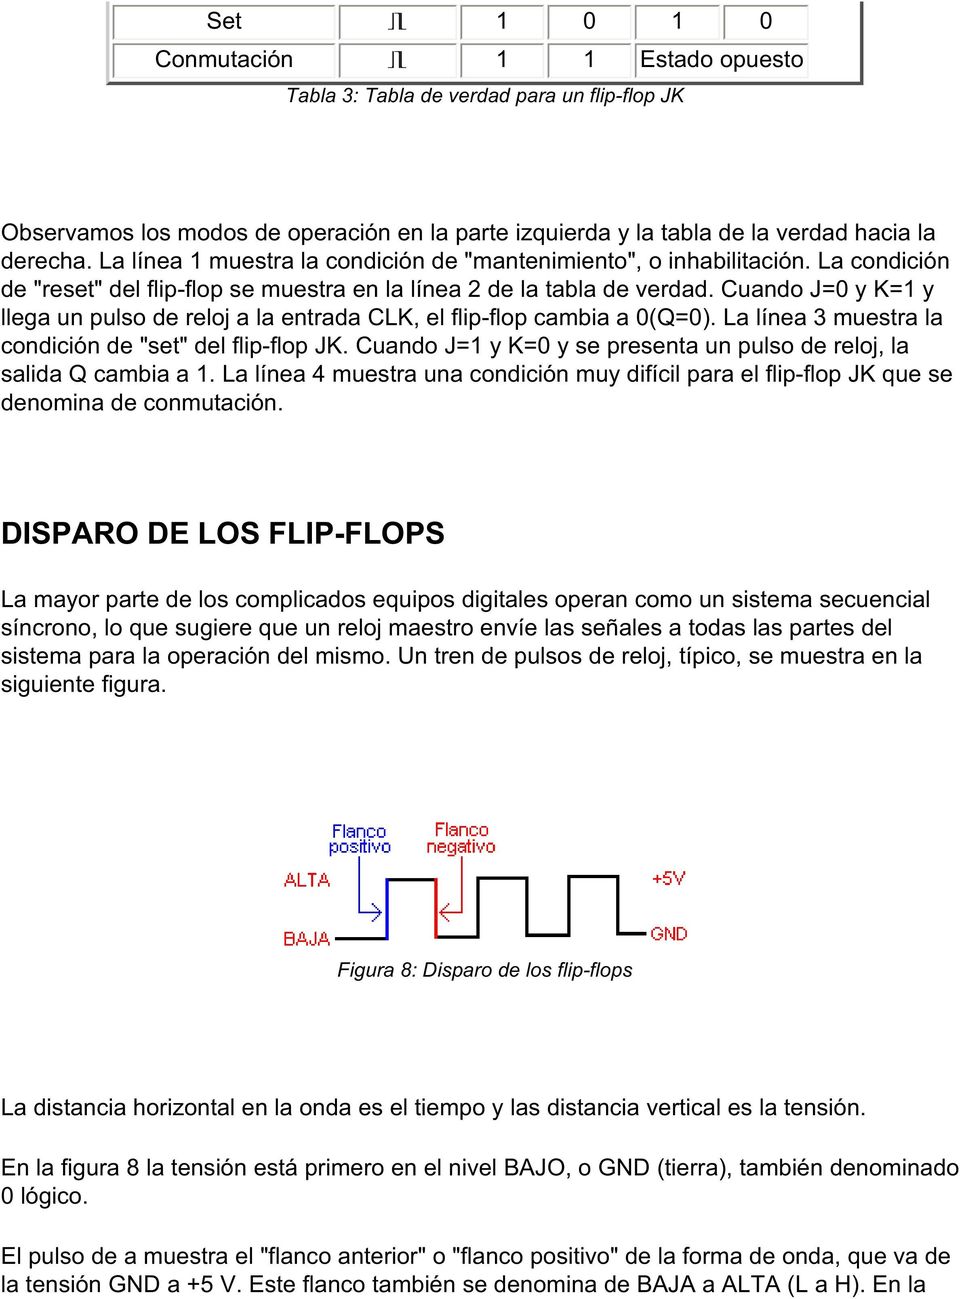 Cuando J=0 y K=1 y llega un pulso de reloj a la entrada CLK, el flip-flop cambia a 0(Q=0). La línea 3 muestra la condición de "set" del flip-flop JK.